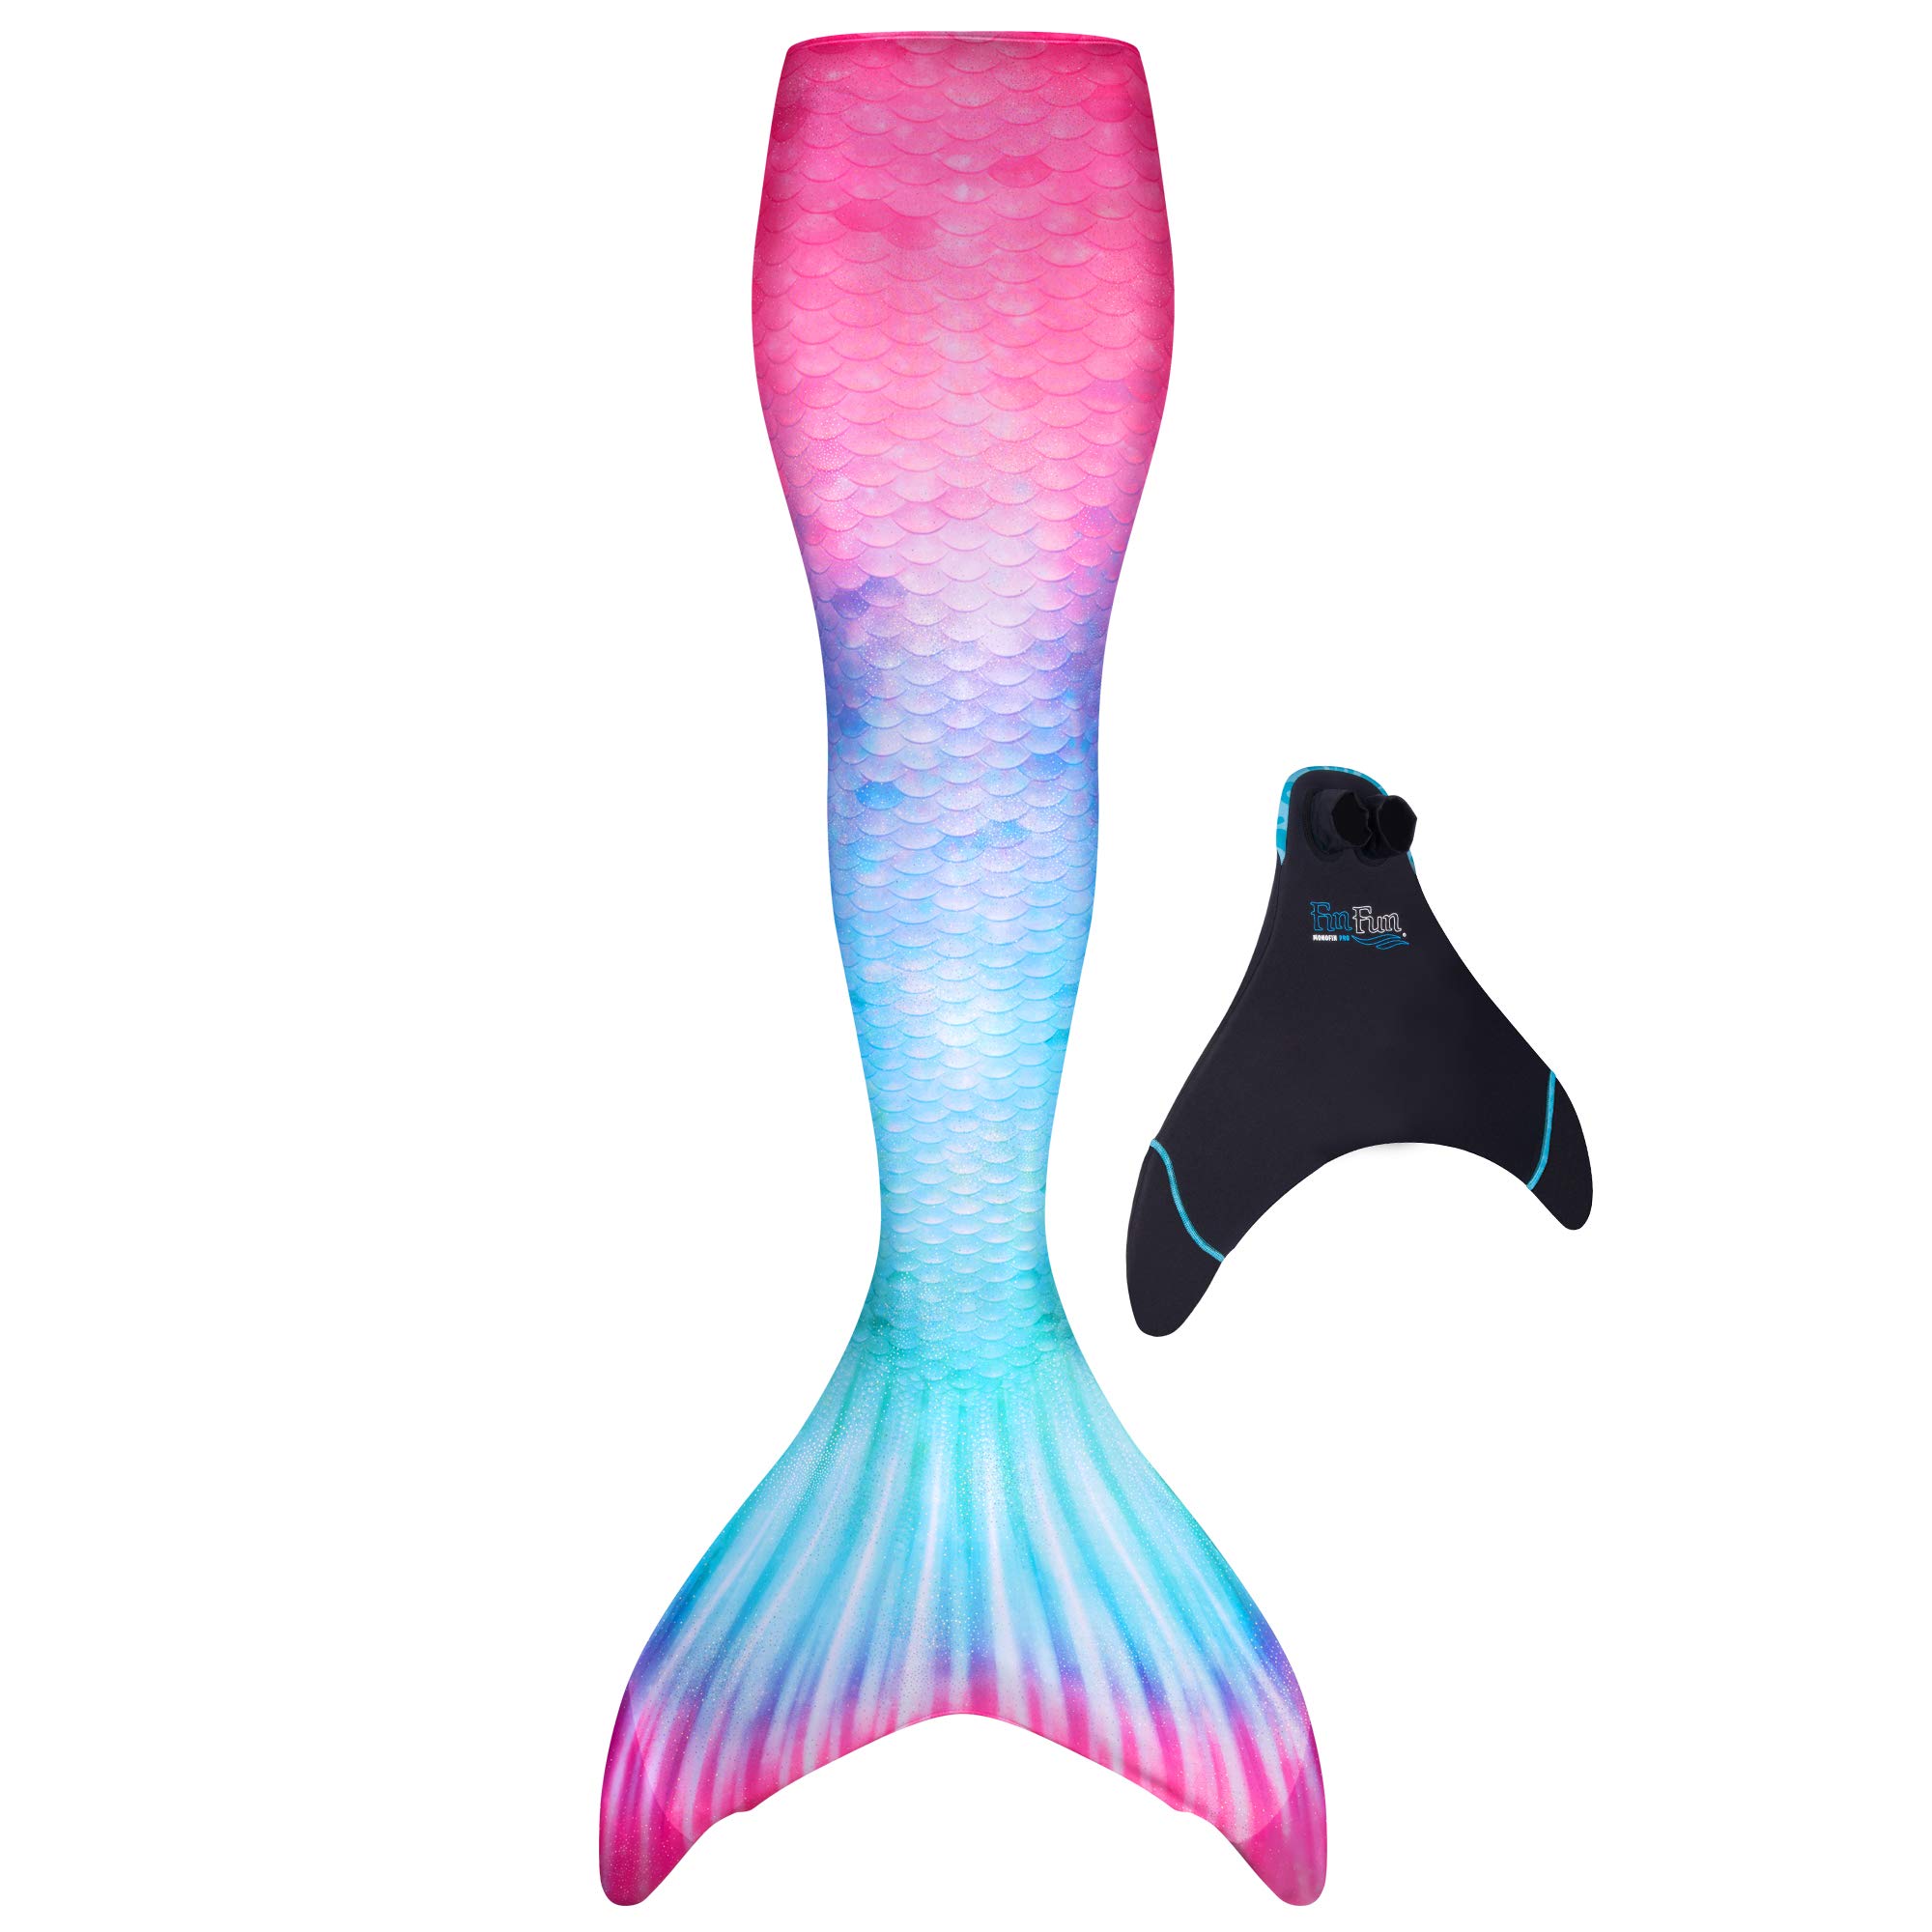 Fin Fun Limited Edition Mermaid Tail zum Schwimmen für Frauen, Teenager und Erwachsene mit Monoflosse, Small, Fiji Fantasy